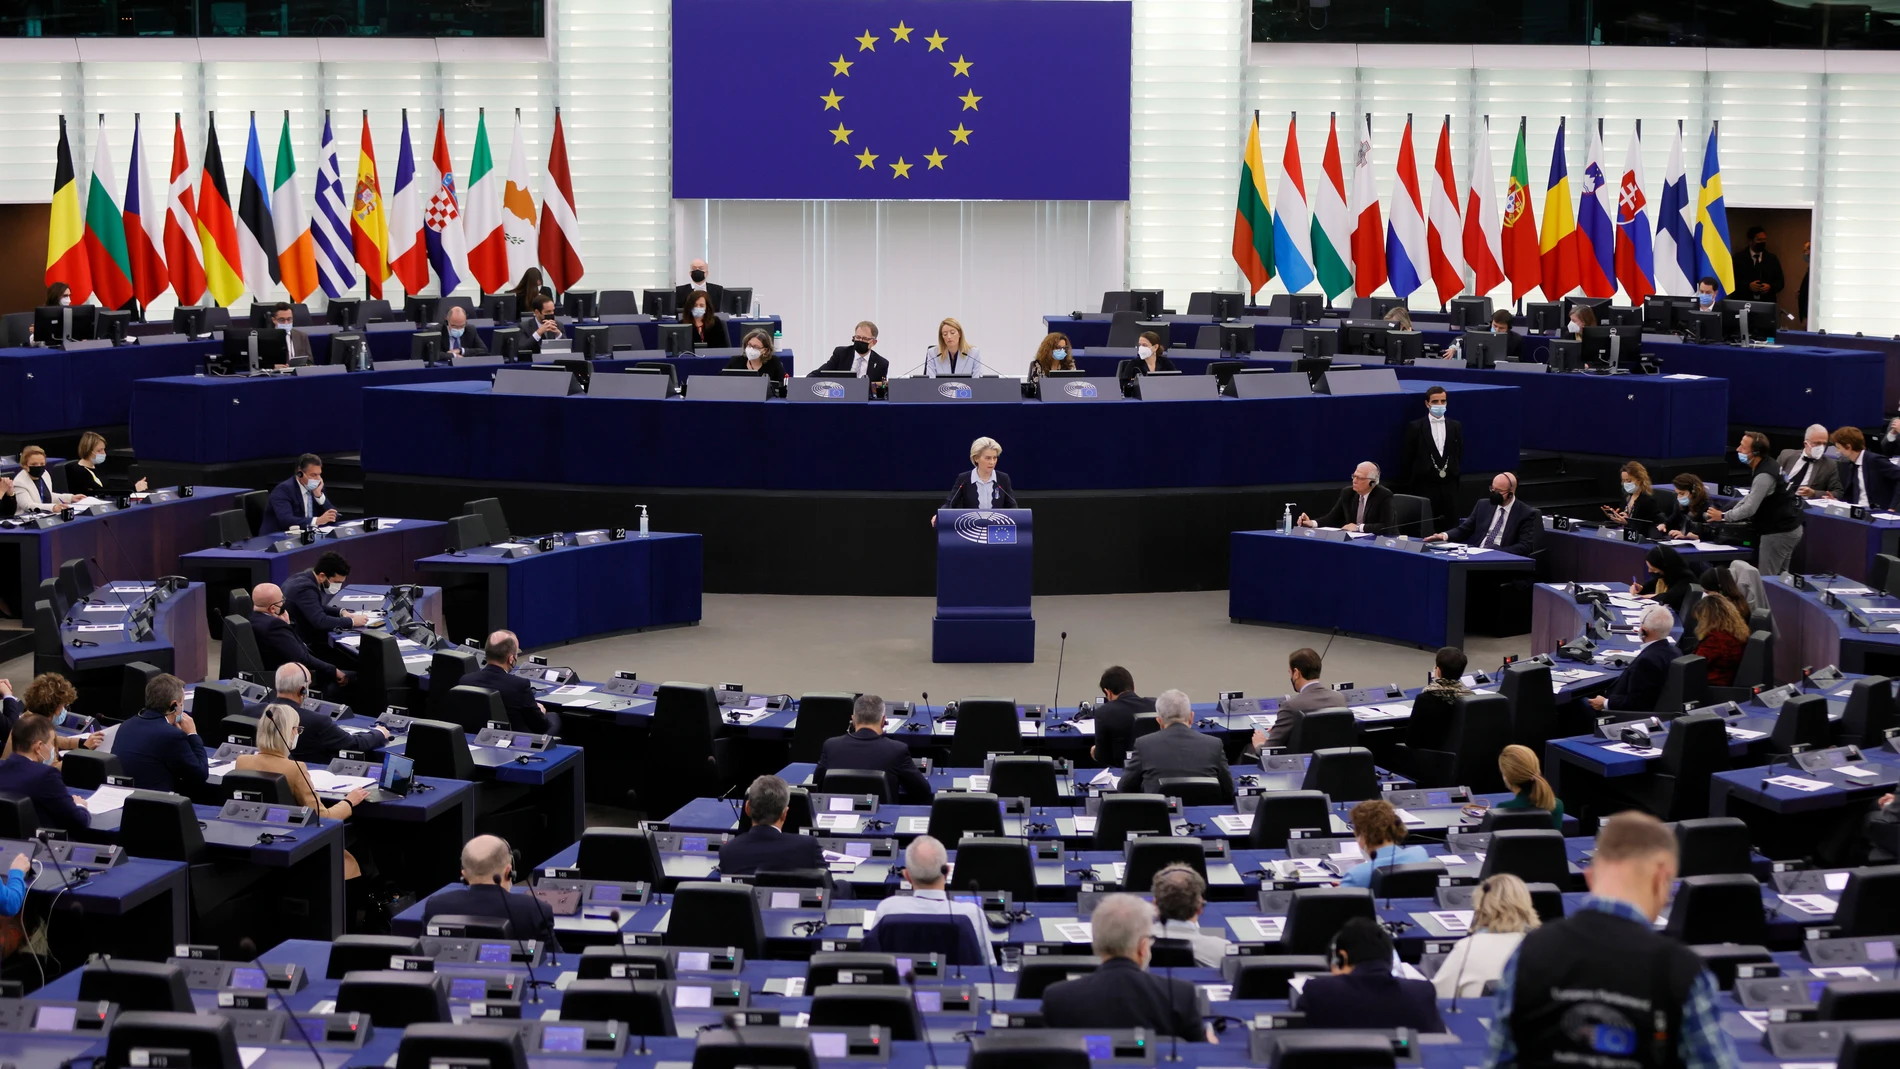 Sesión del parlamento europeo con la intervención de Ursula von der Leyen